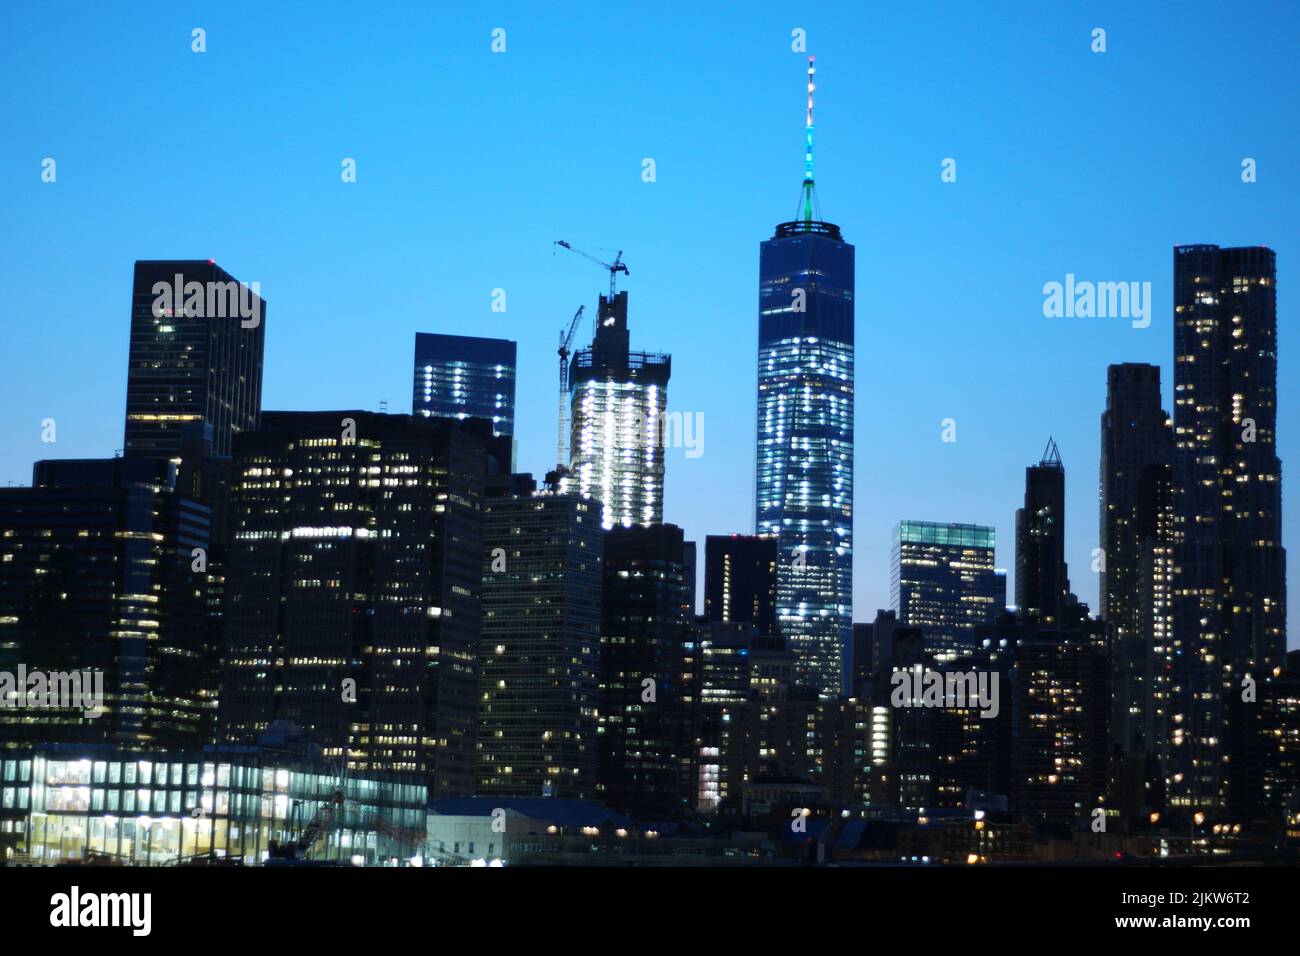 Lo scenario ipnotico dello skyline di New York City in serata con luci luminose Foto Stock